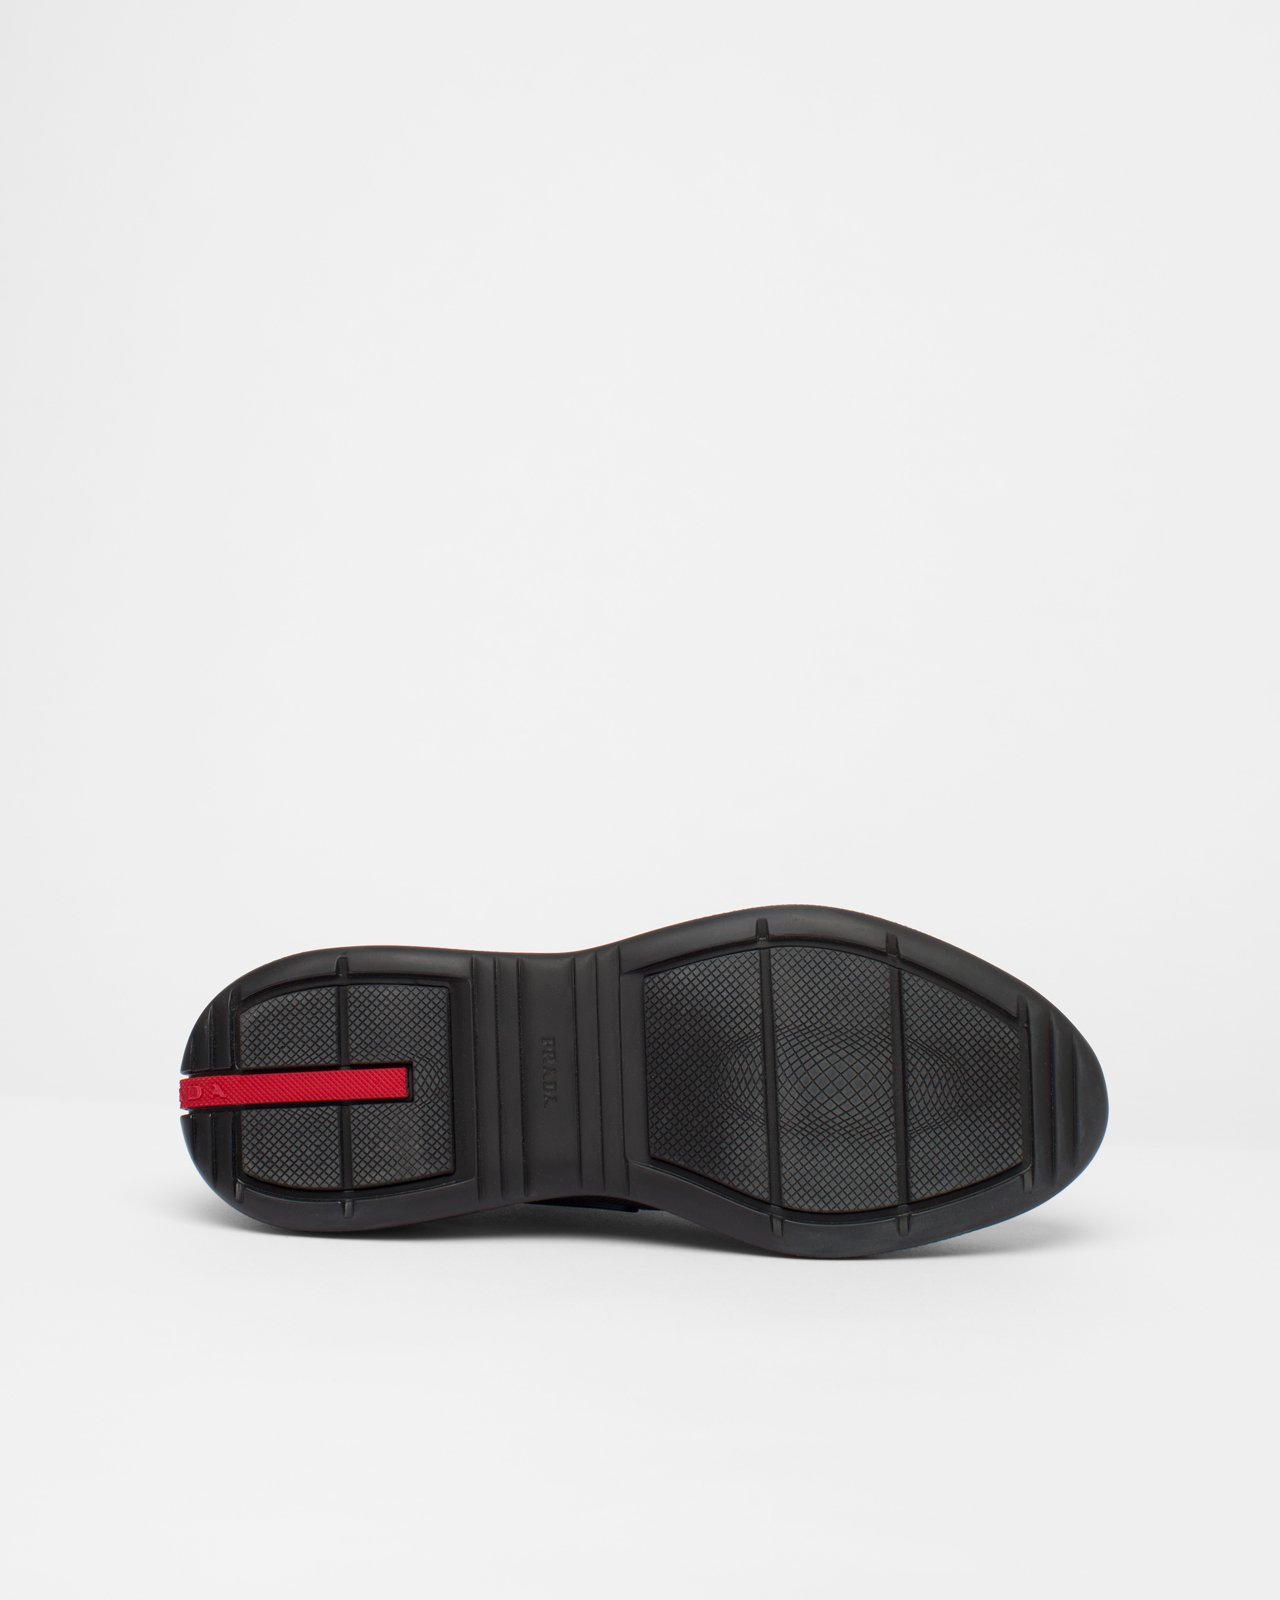 Prada - Men's Americas Cup Knit Slip-On - Footwear - Black - Image 4